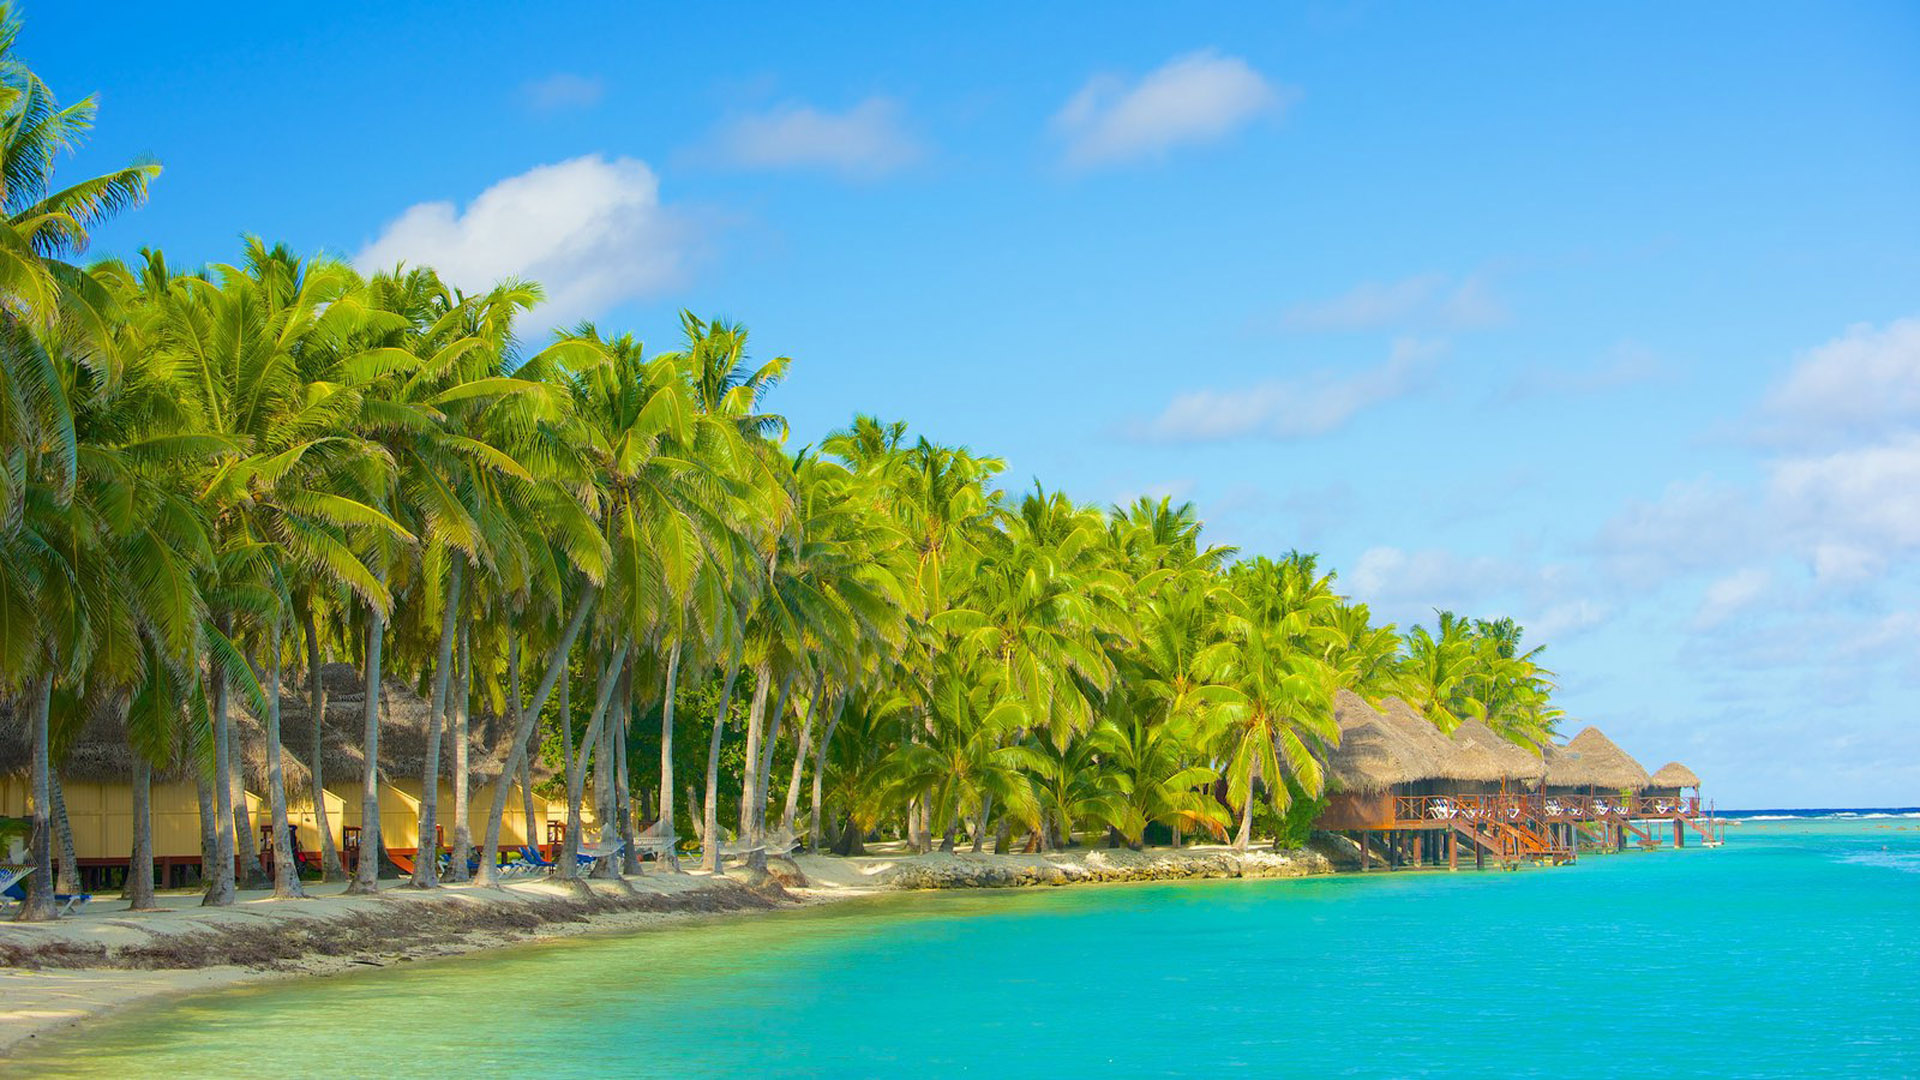 Akitua Island, Aitutaki, Cook Islands, Tropical beach getaway, 1920x1080 Full HD Desktop